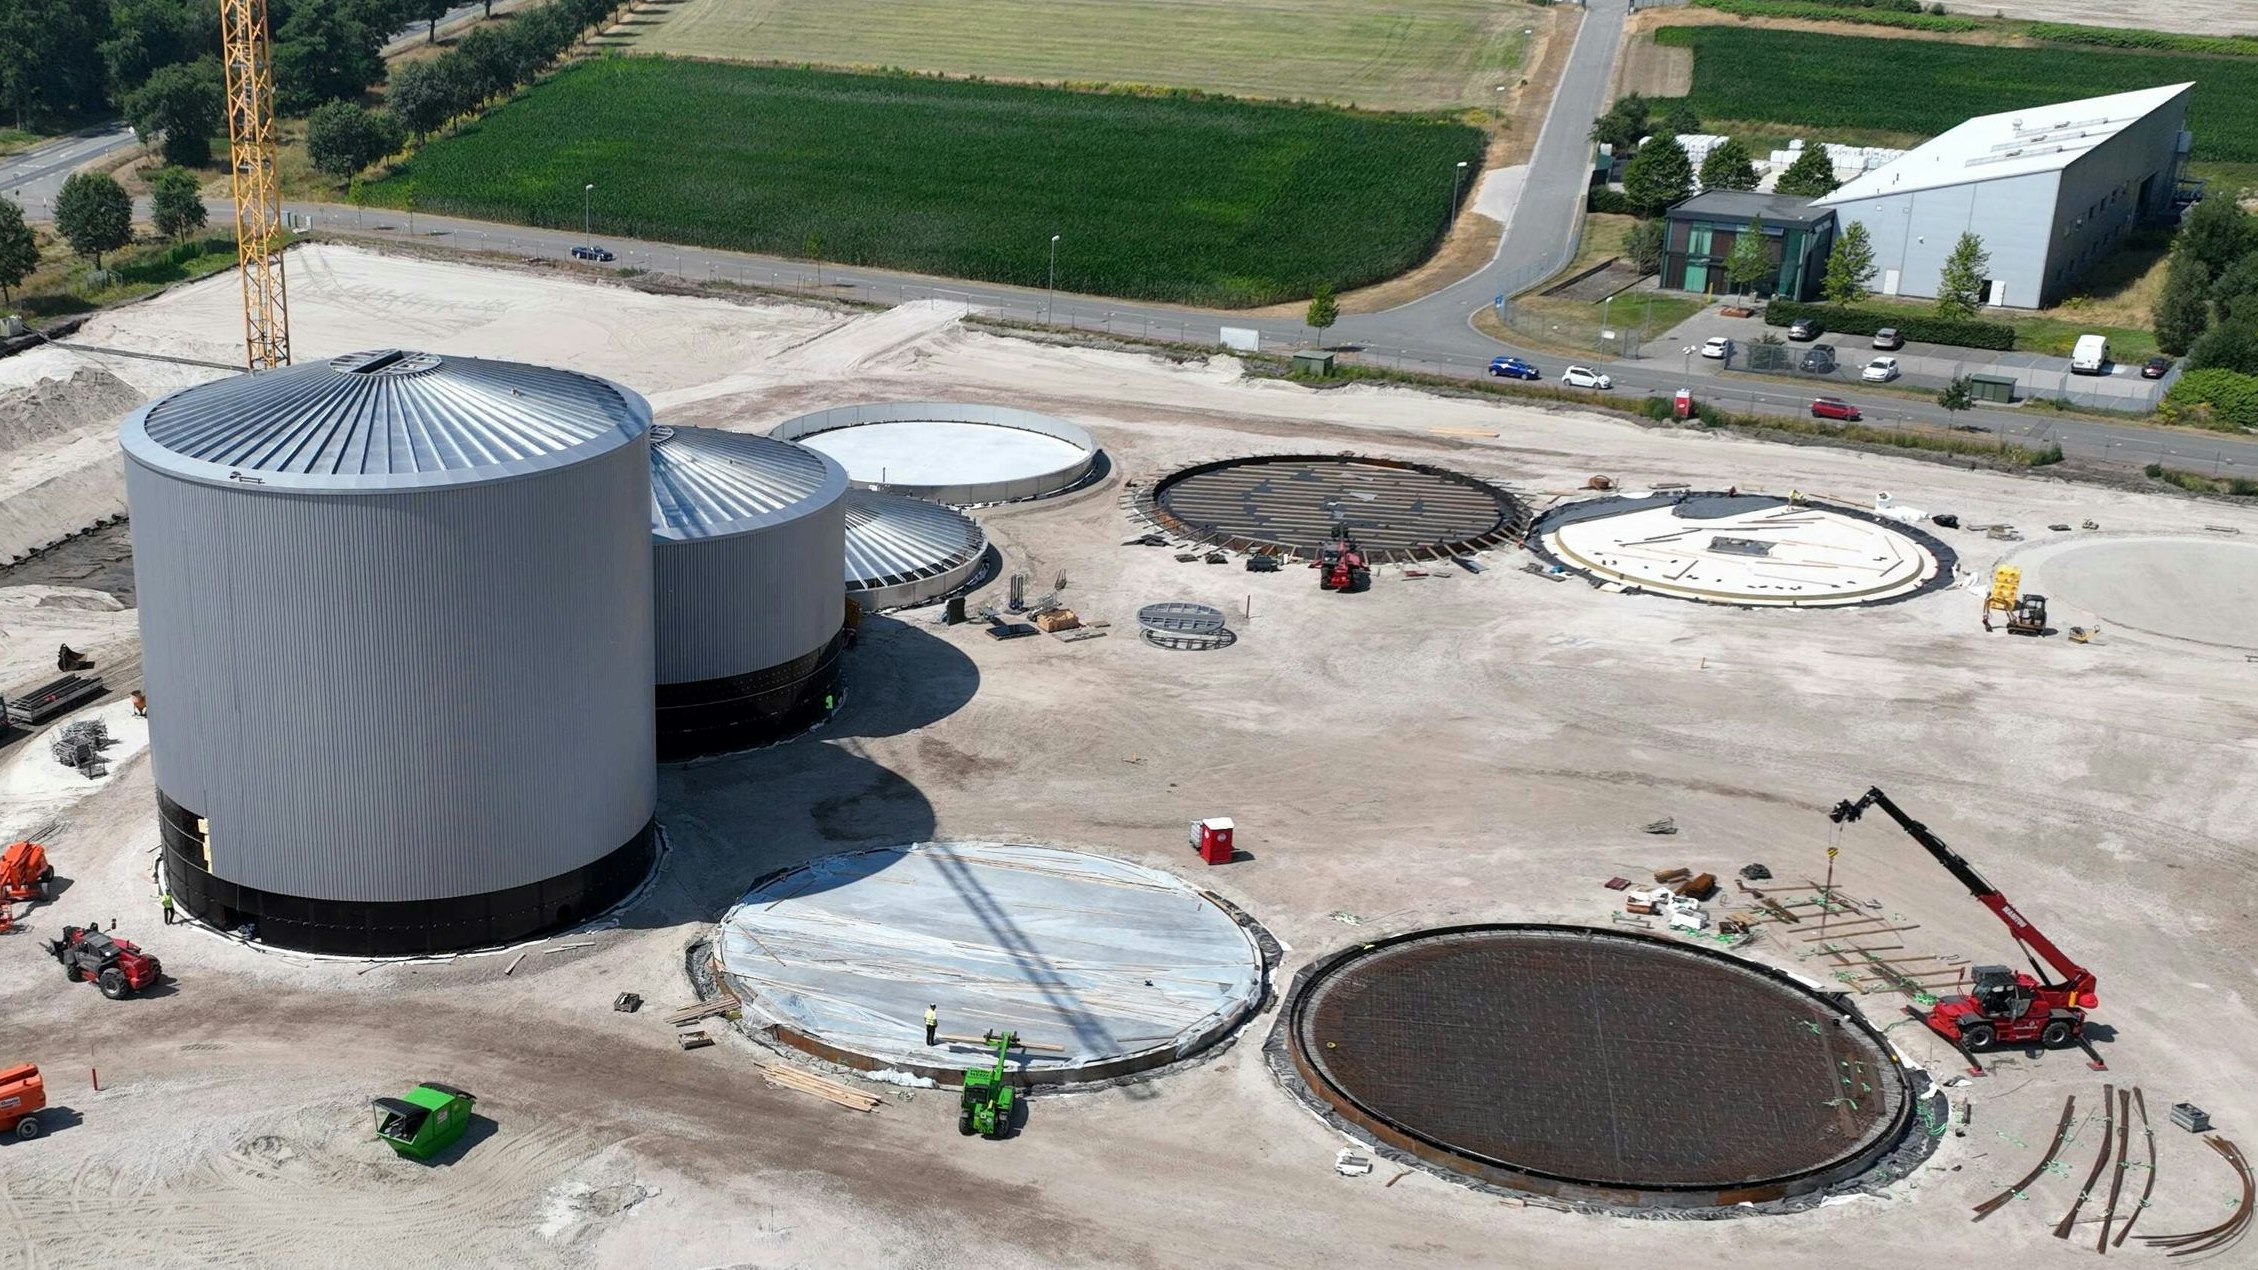 Nachbarn: Das Chemieunternehmen Synlab GmbH (oben rechts) liegt direkt neben den Hochbehältern der Biogasanlage. Synlab hat jetzt Einwendungen gegen die Erteilung der Baugenehmigung durch das Gewerbeaufsichtsamt erhoben. Foto: Schiwyair Medienproduktion